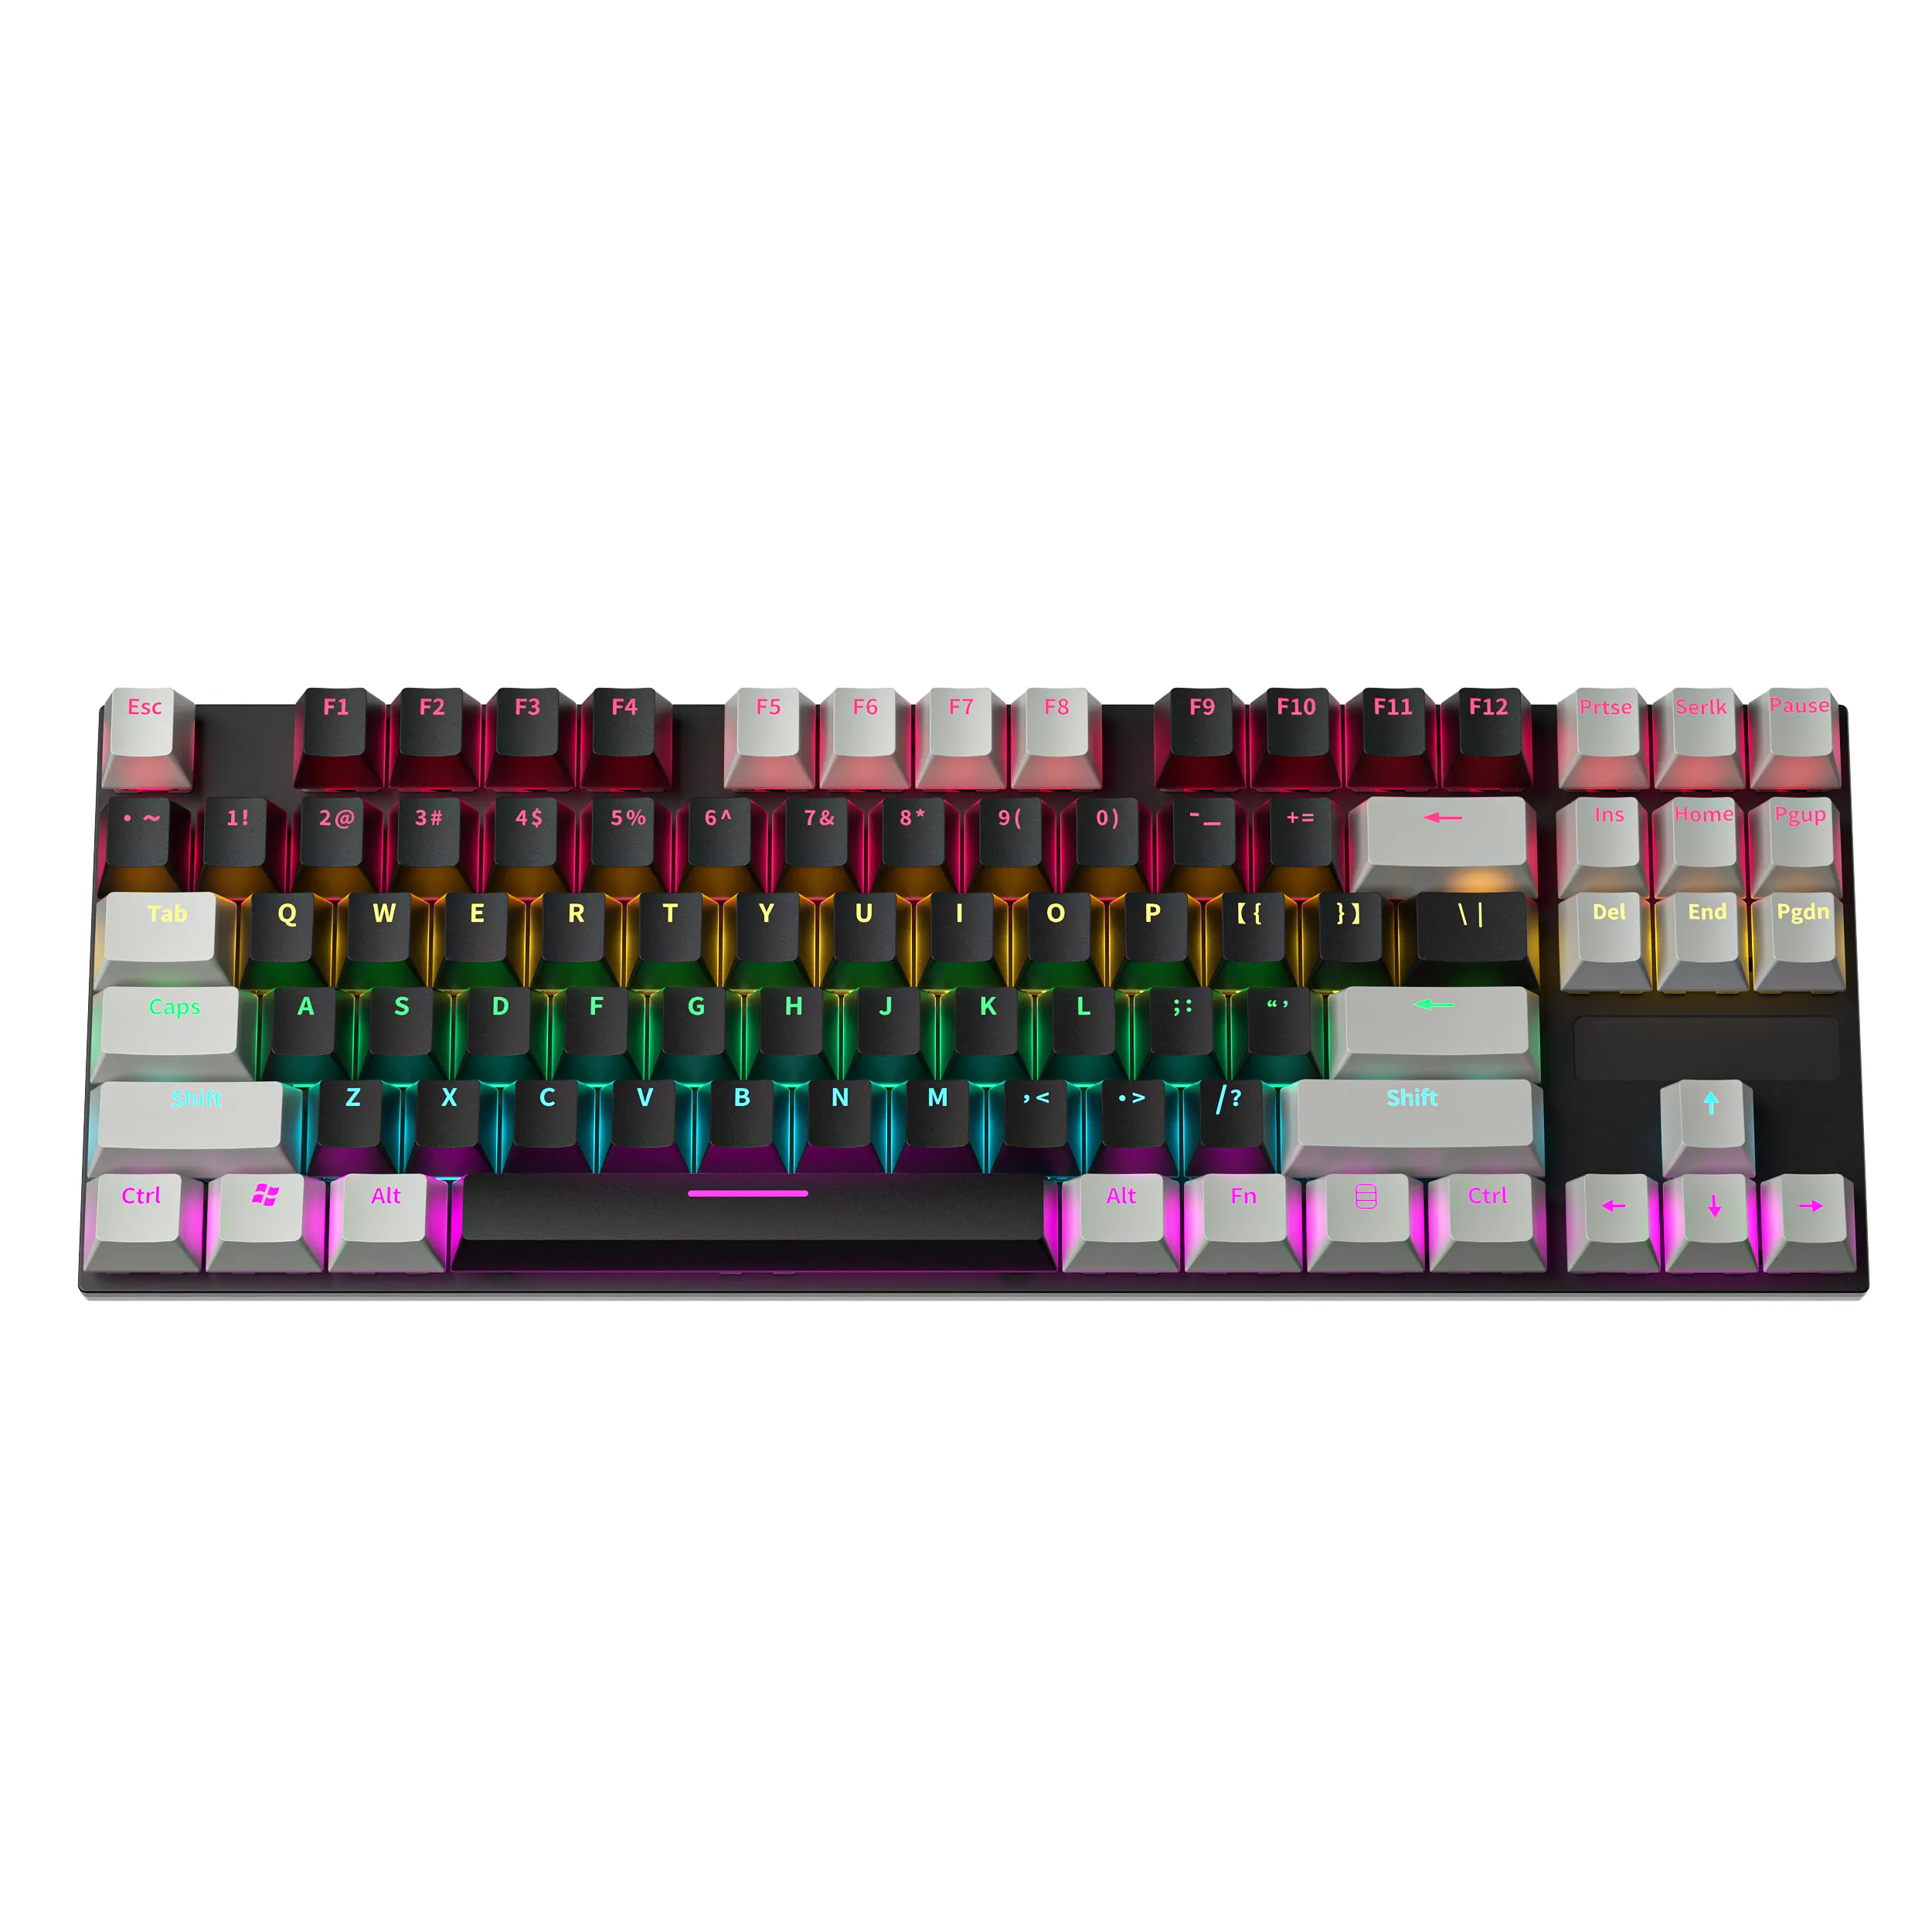 Проводная механическая клавиатура RGB PBT, 60% белая клавиатура, игровая мышь, геймер